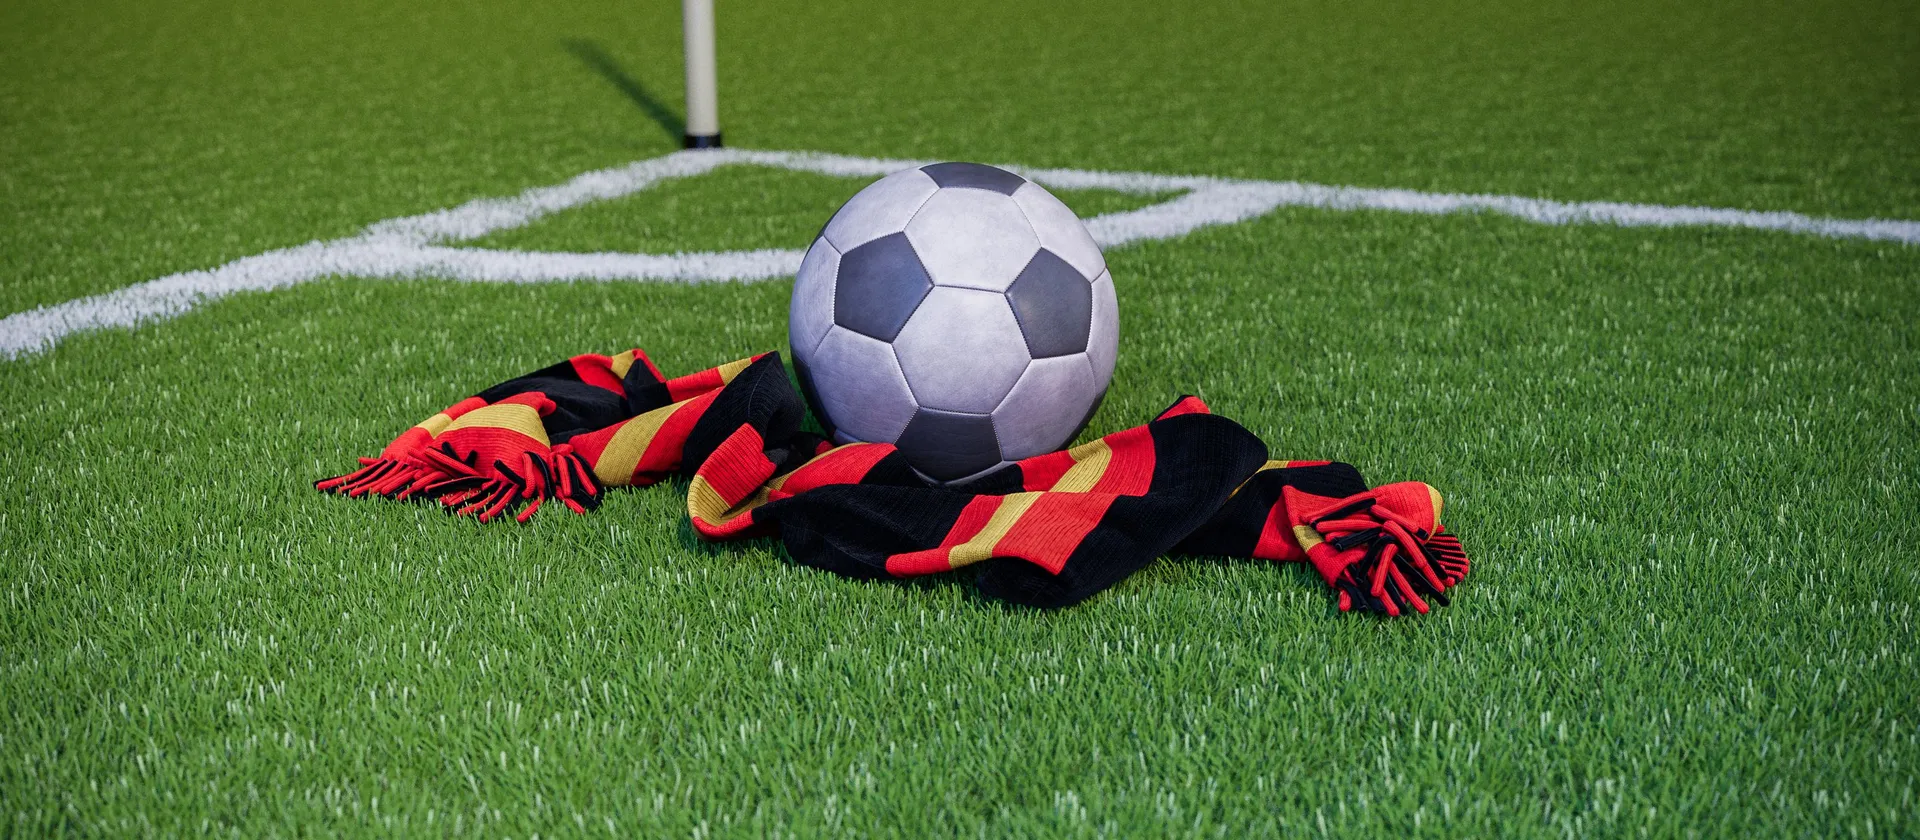  Bild på en fotboll och en supporterhalsduk med allsvenska laget Brommapojkarnas färger